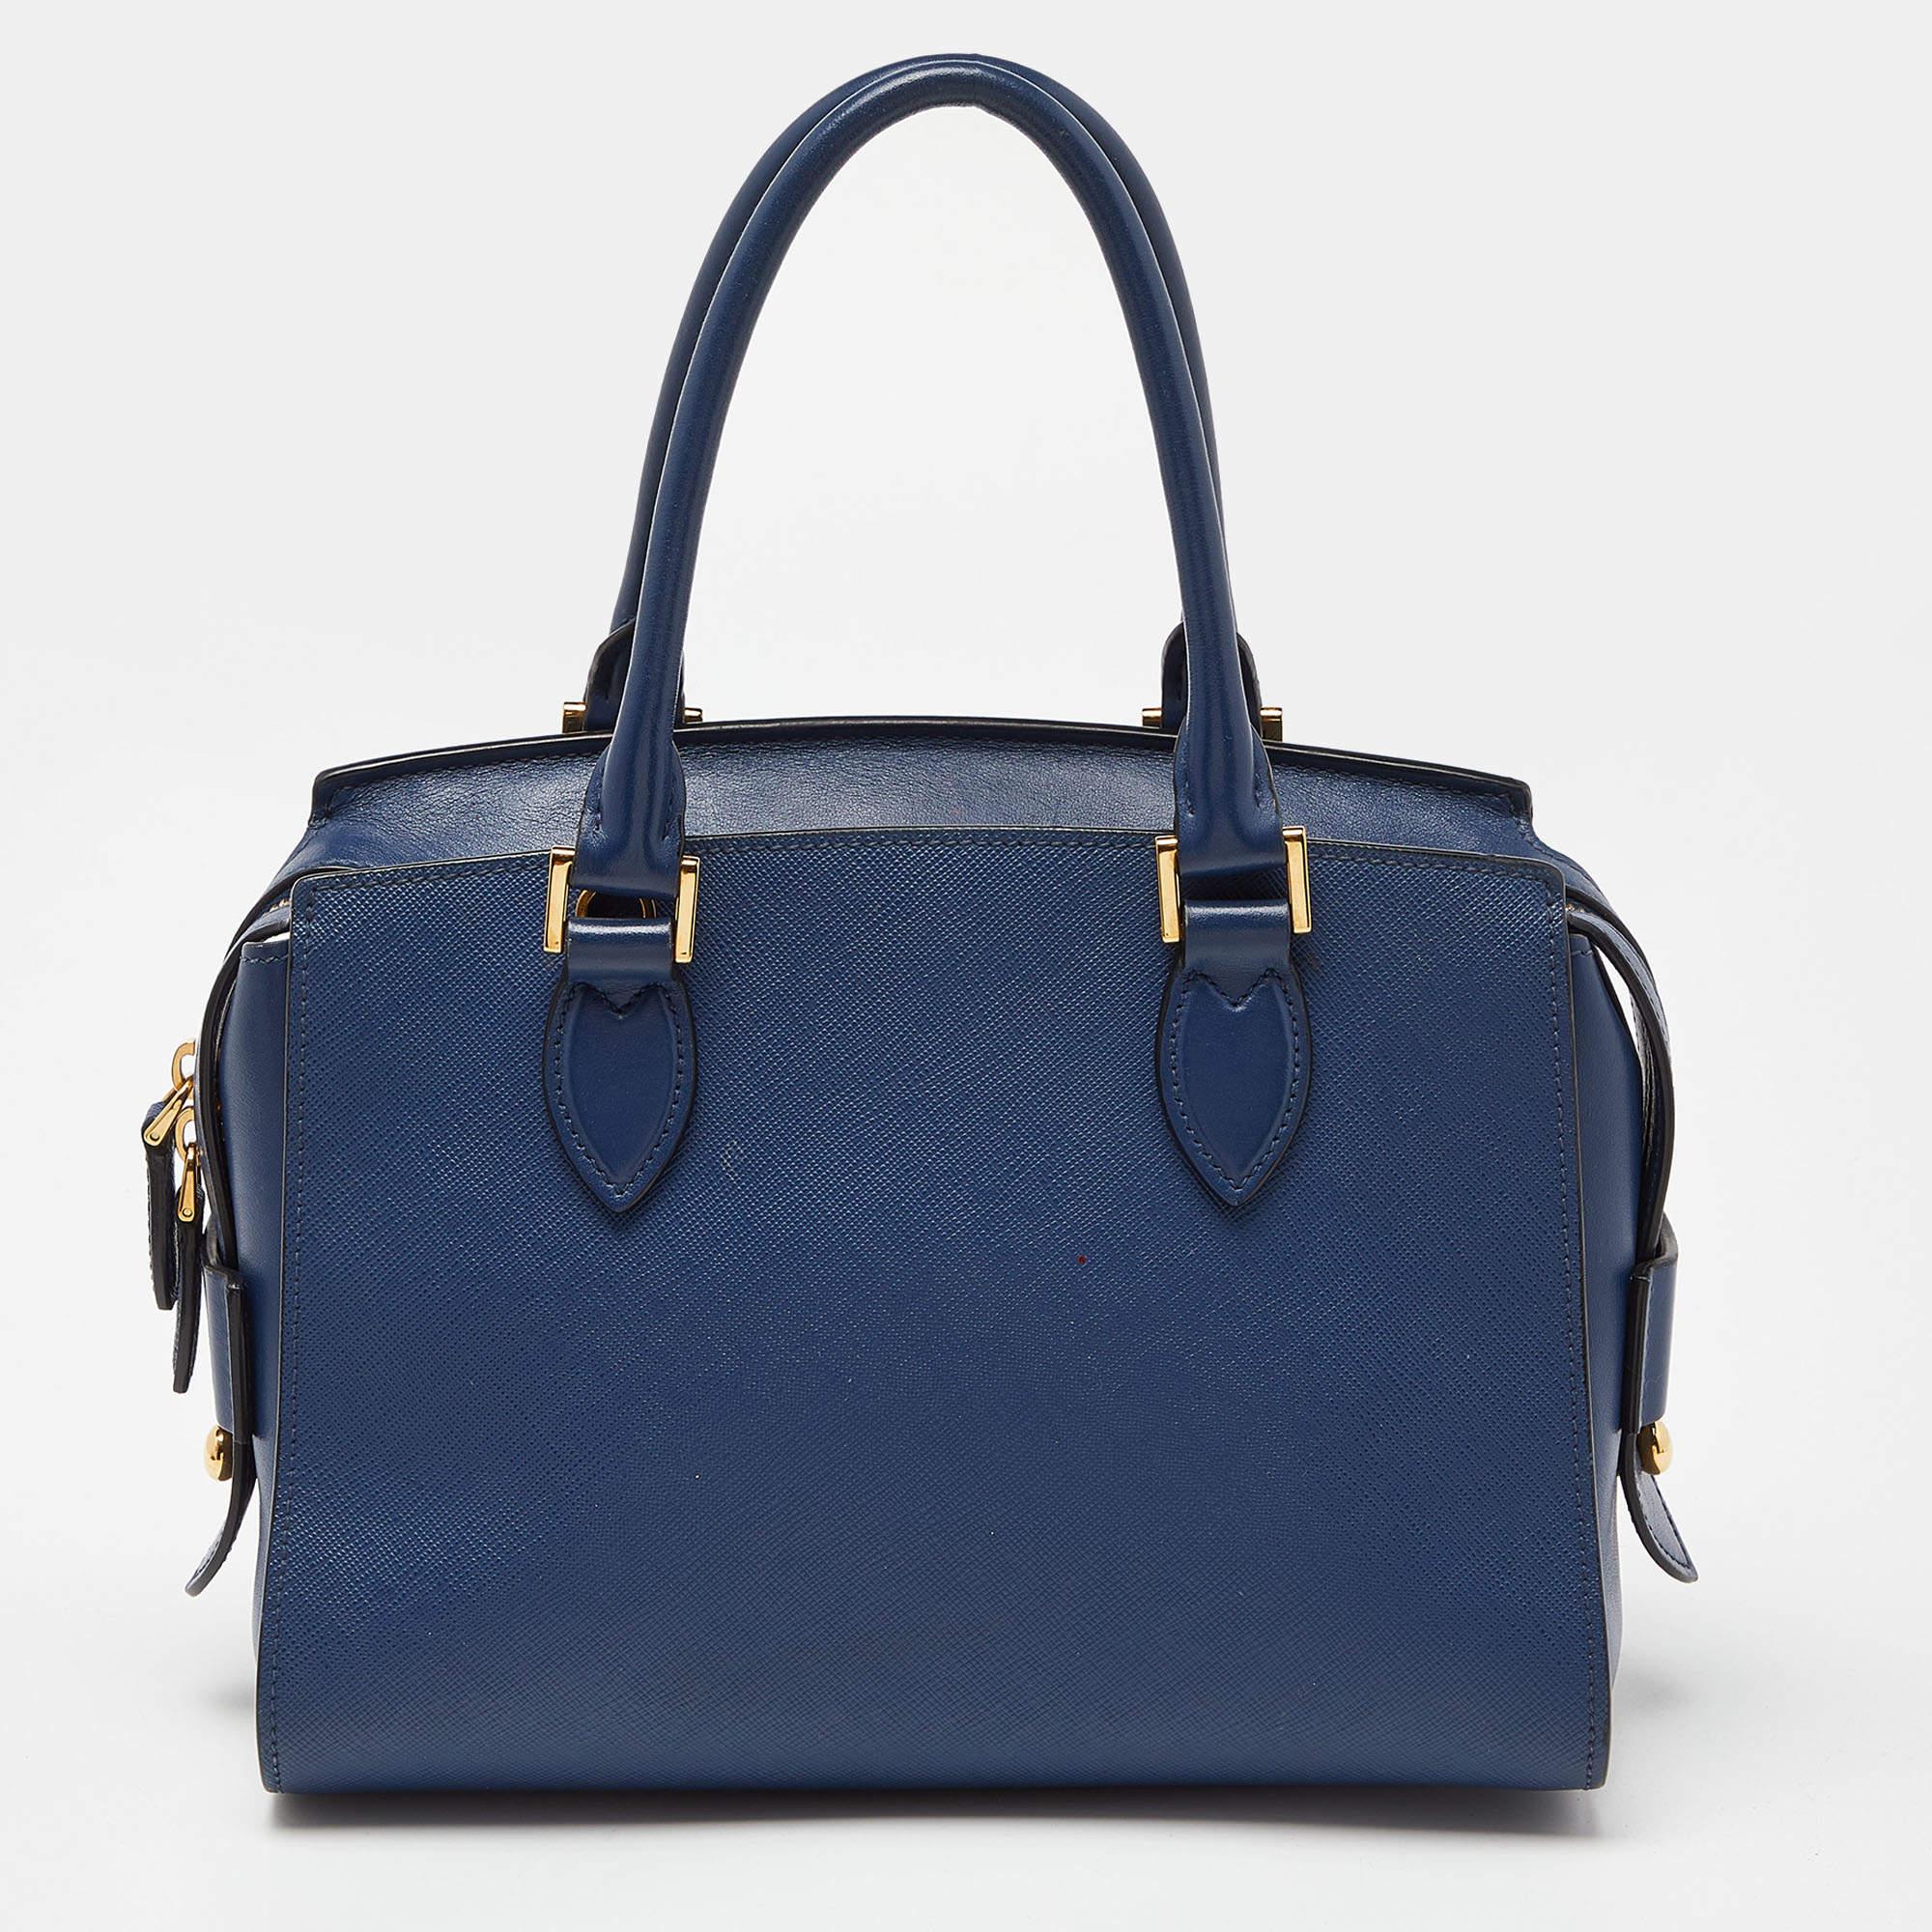 Durchdachte Details, hohe Qualität und Alltagstauglichkeit zeichnen diese Designertasche für Damen von Prada aus. Die Tasche wird mit viel Geschick genäht, um einen raffinierten Look und eine tadellose Verarbeitung zu gewährleisten.

Enthält: